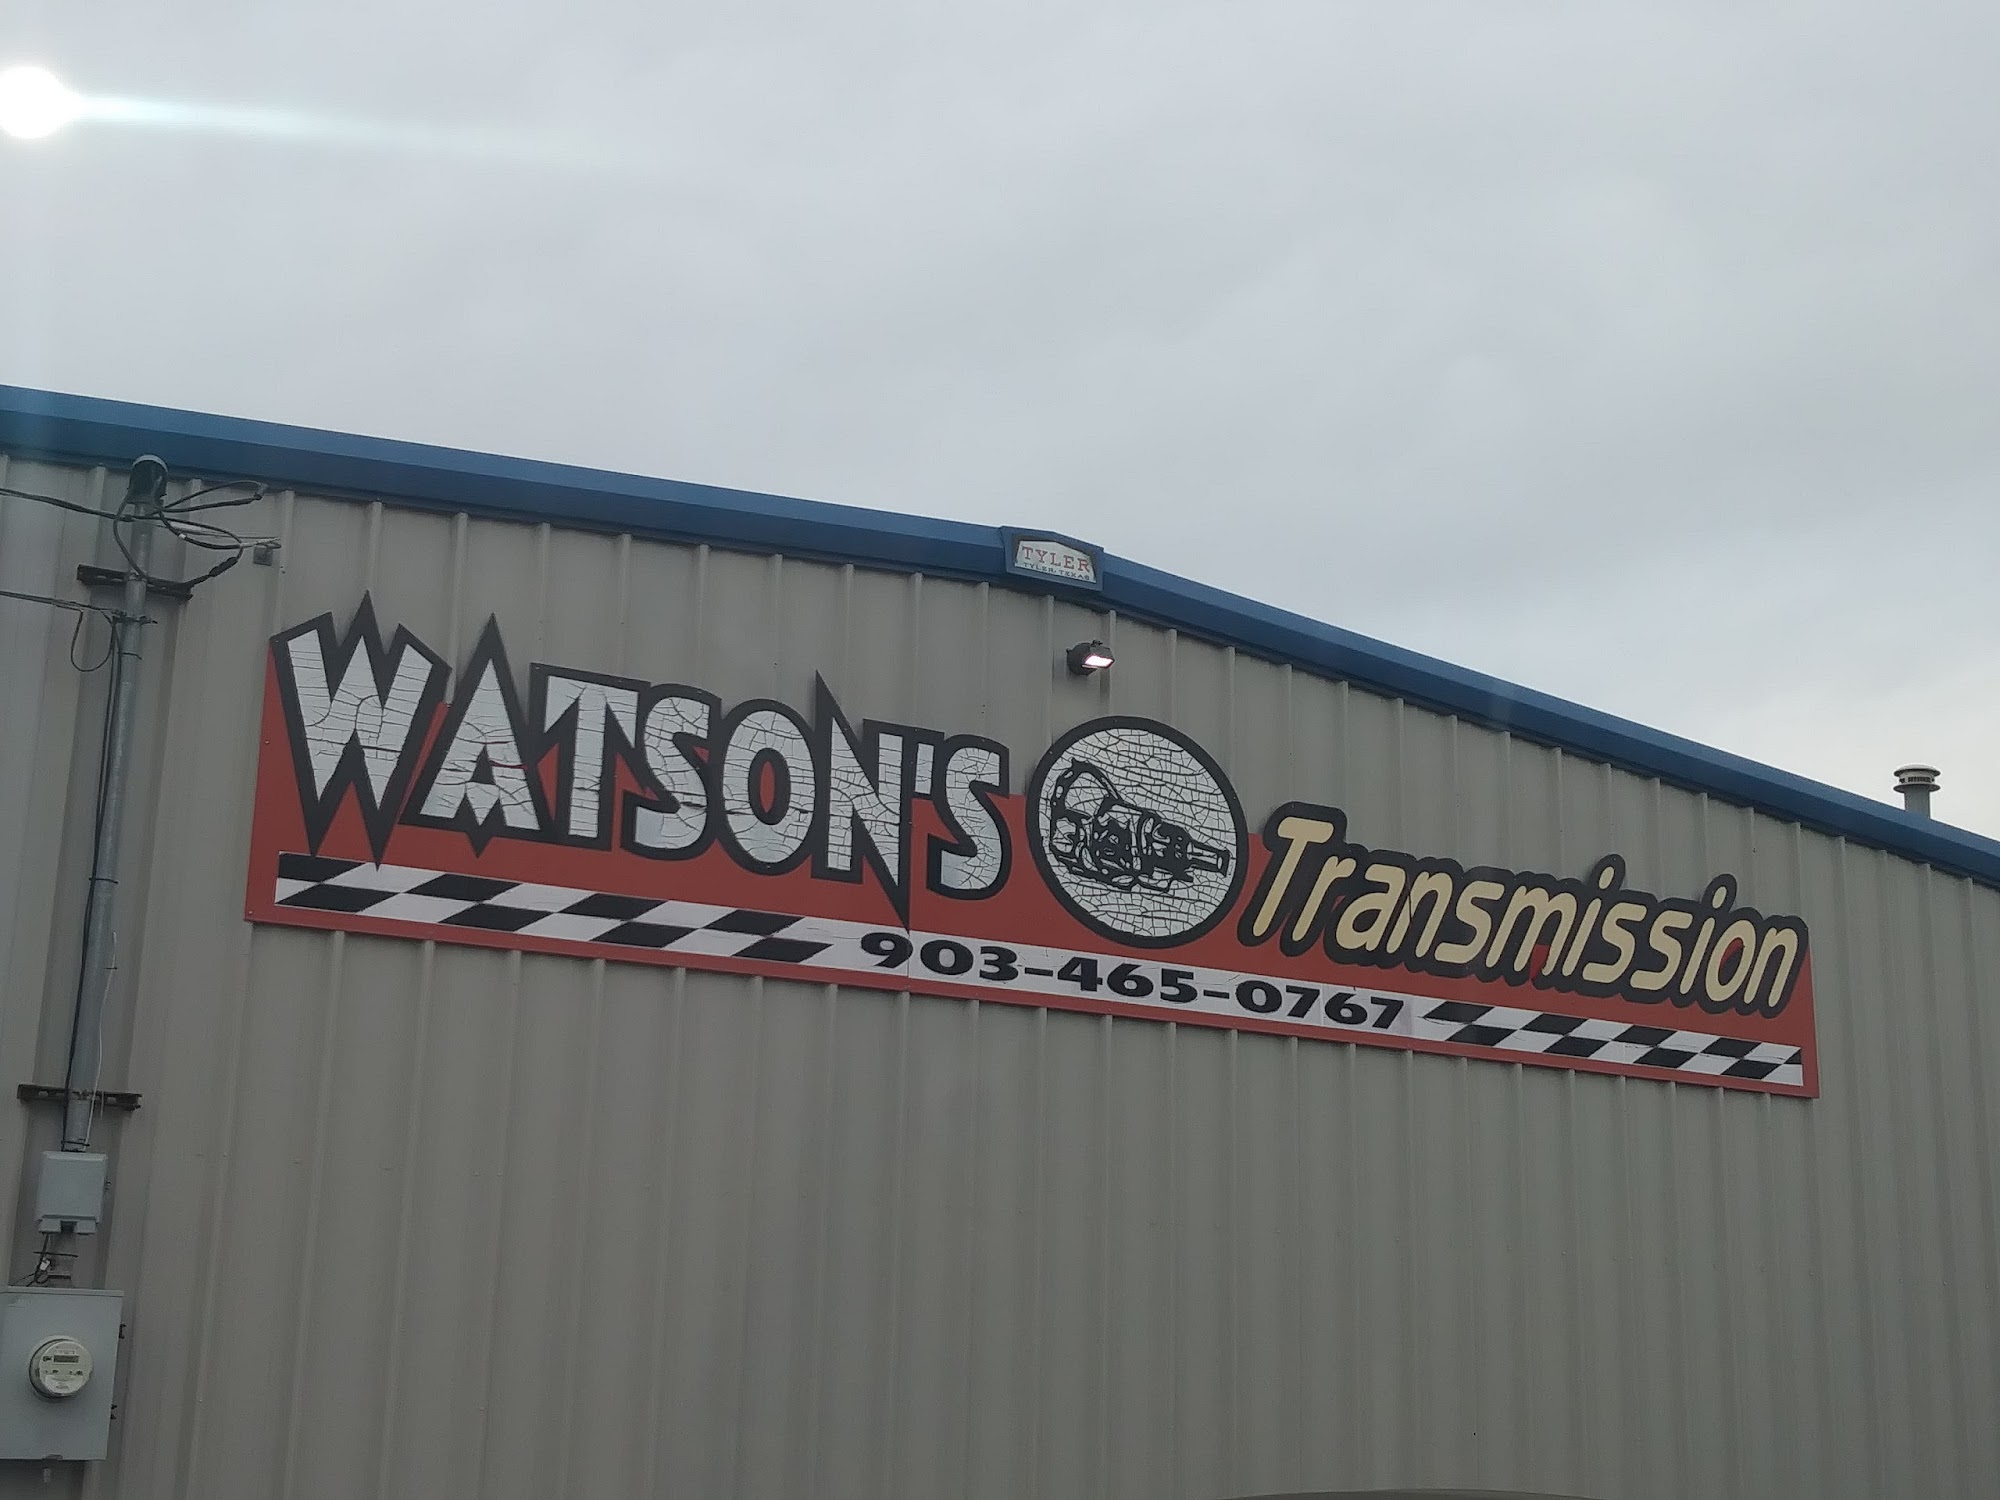 Watson's Transmission